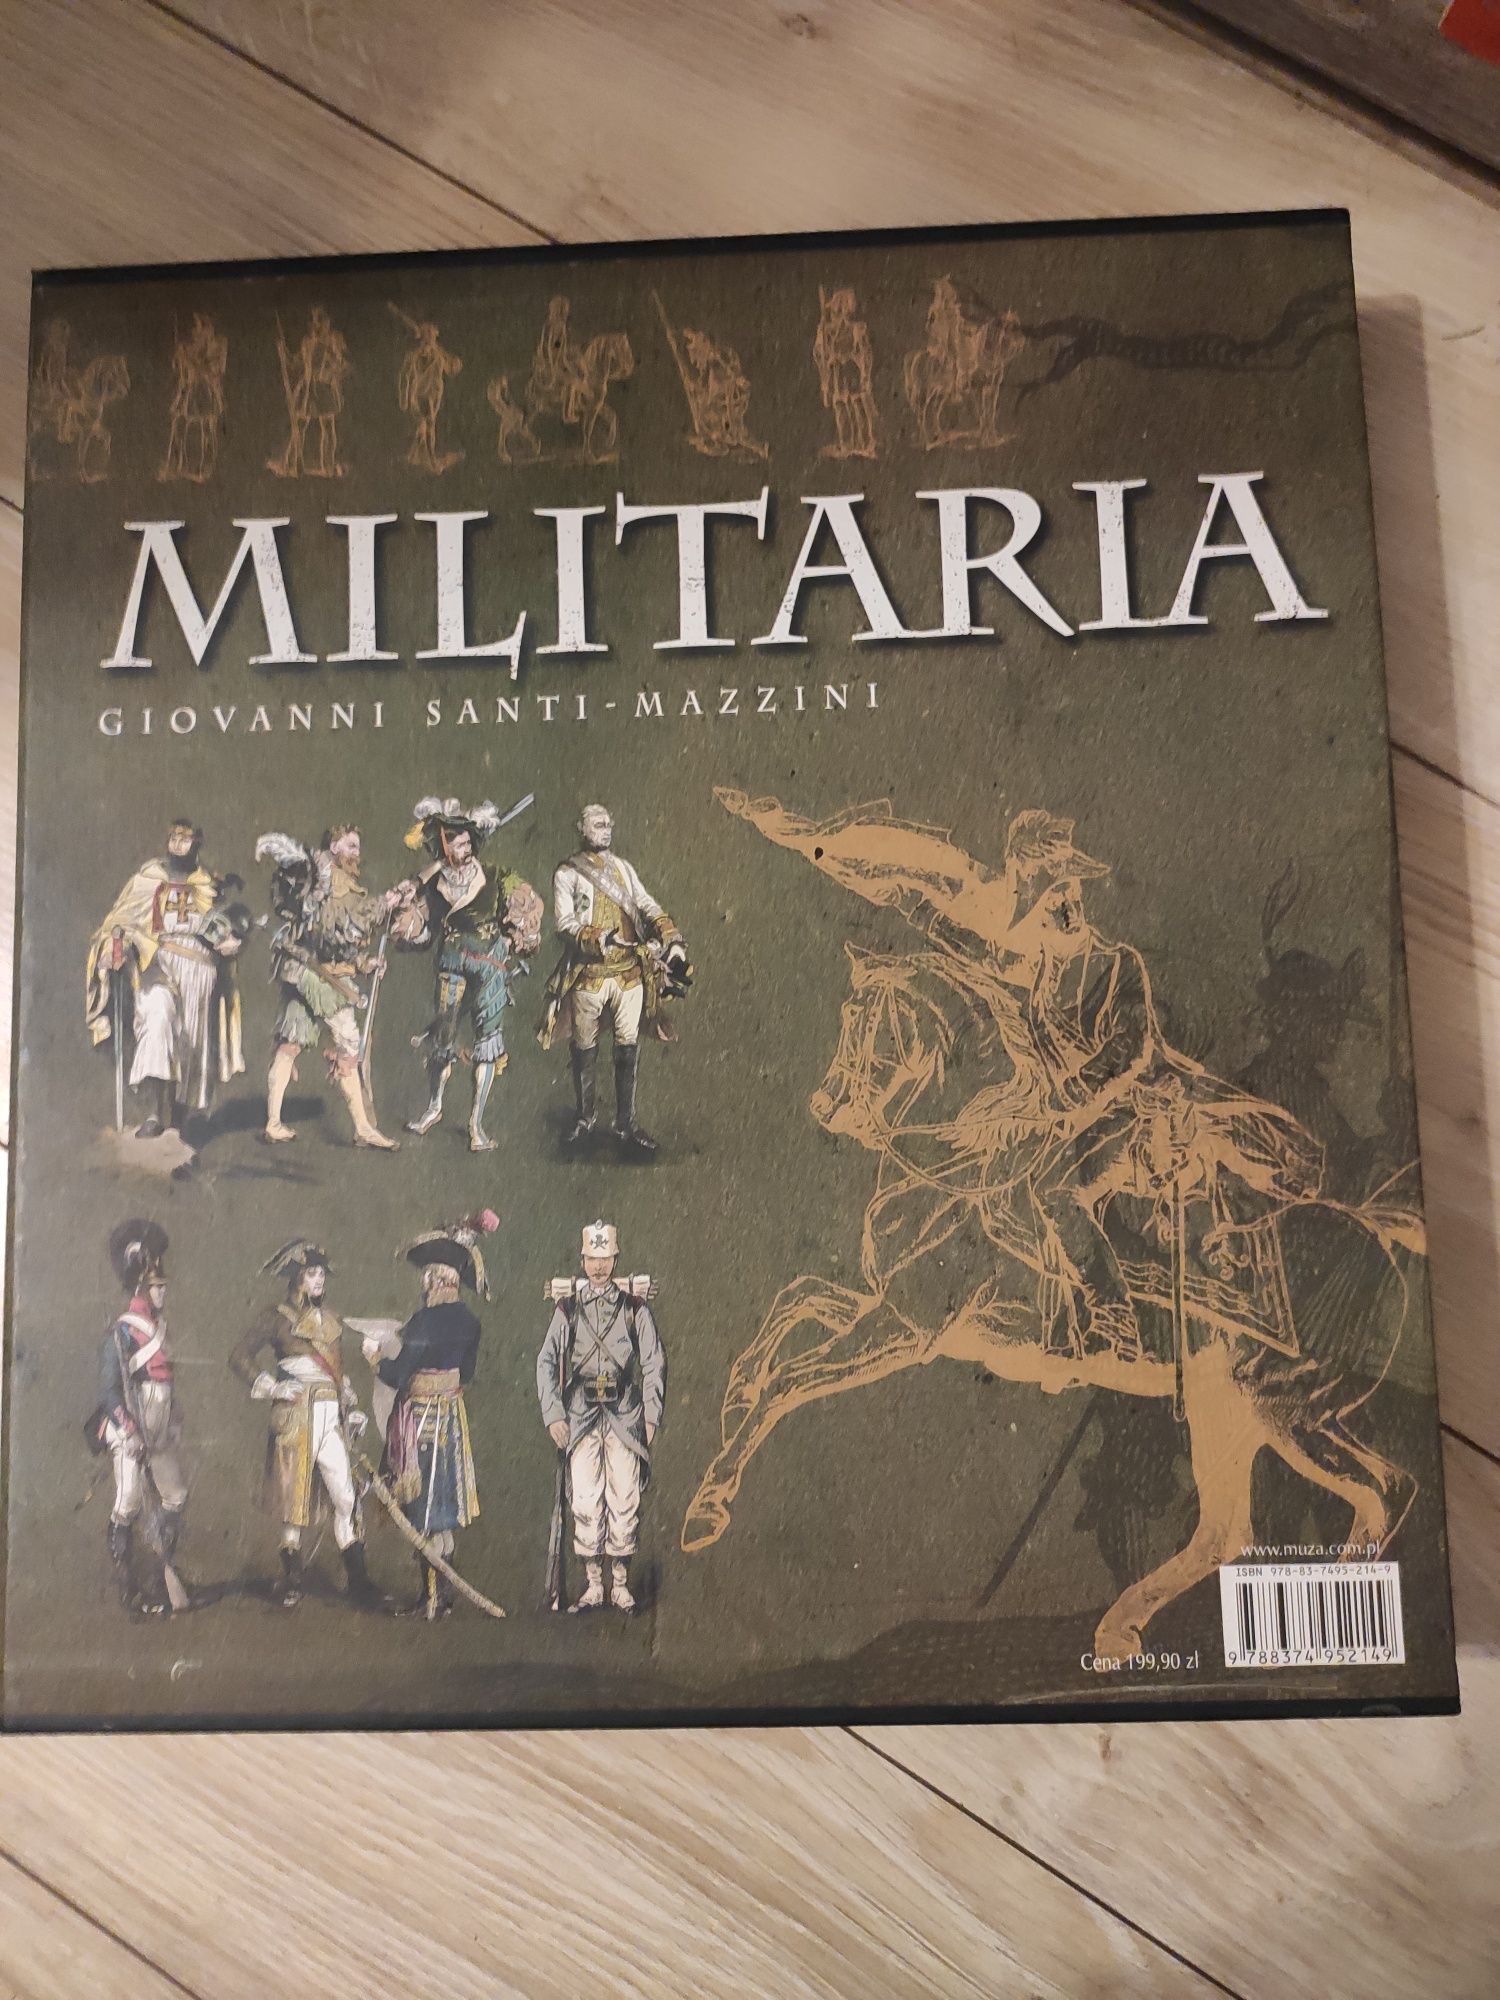 "Militaria" Giovanni Santi-Mazzini